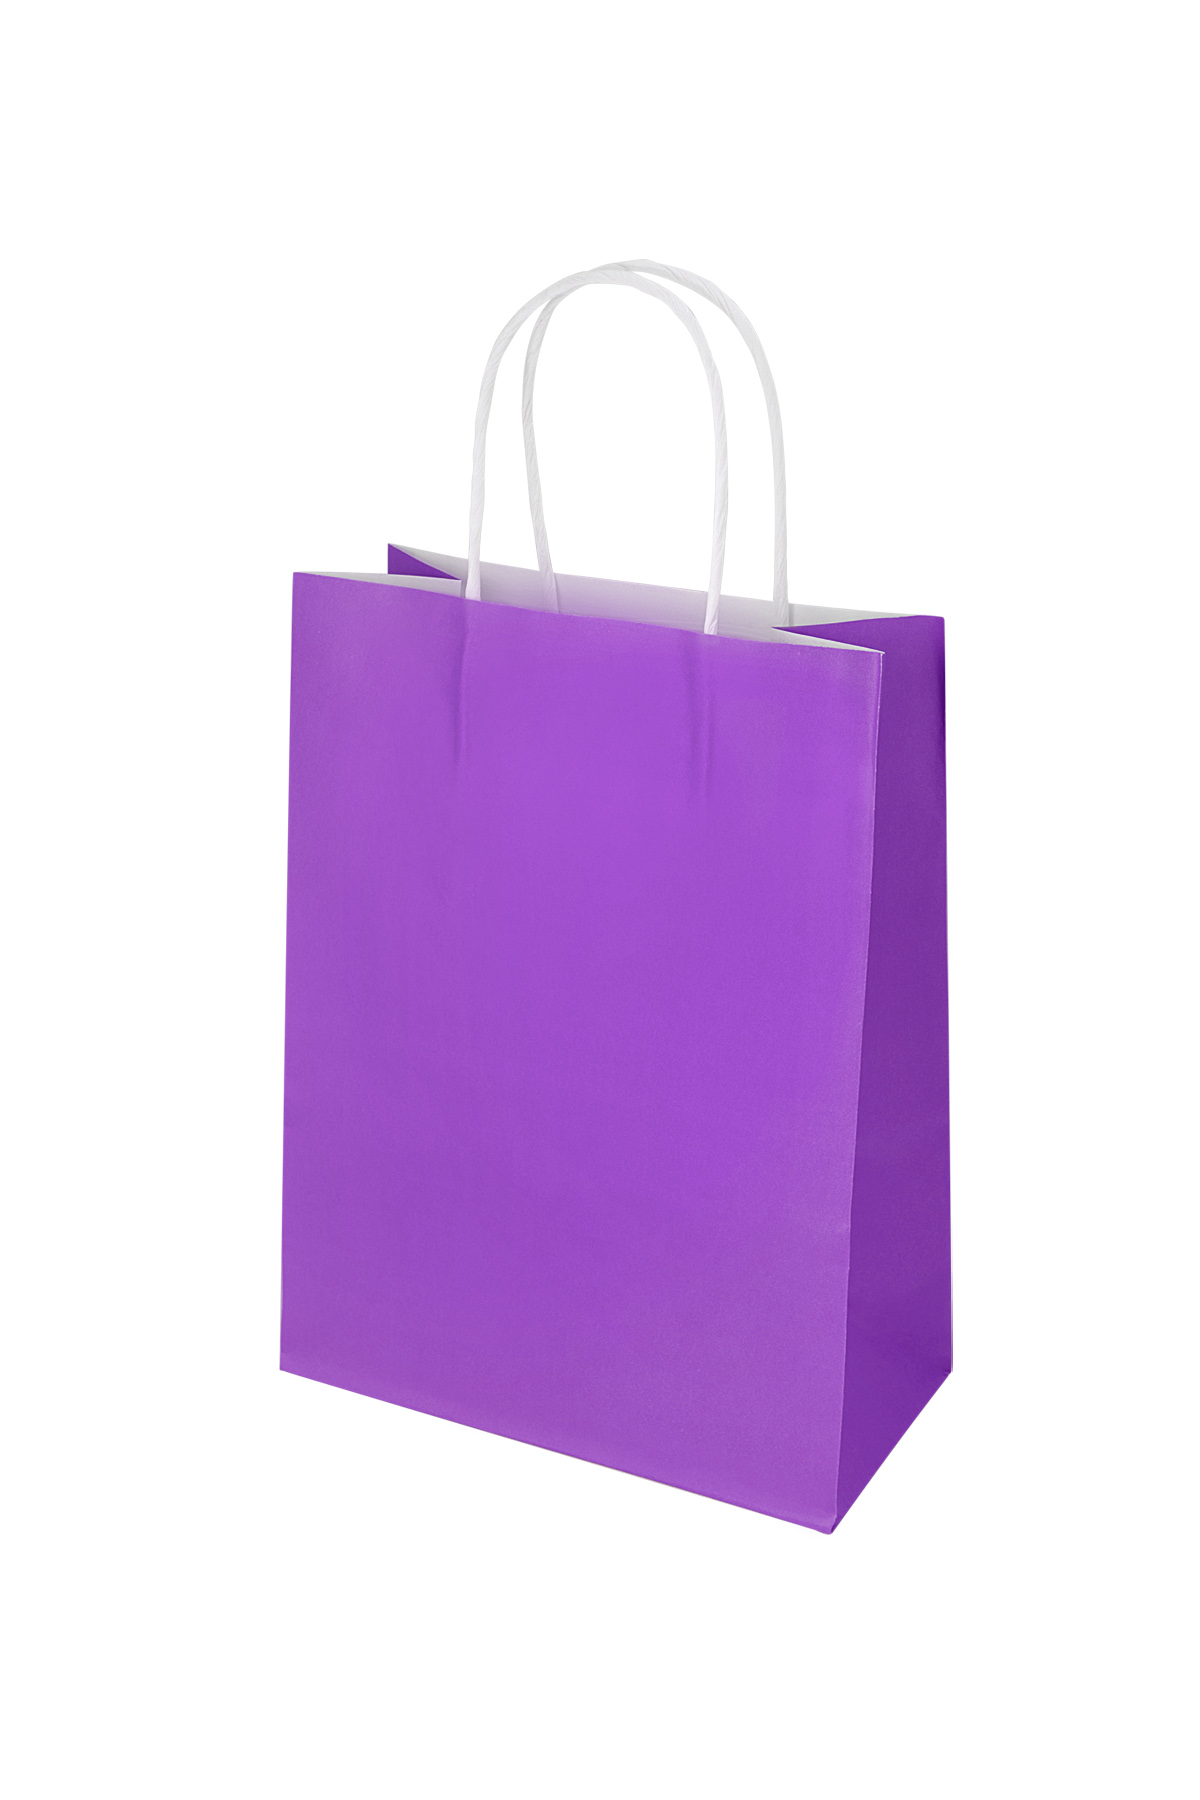 Plain color bags 50 pieces medium - purple Paper